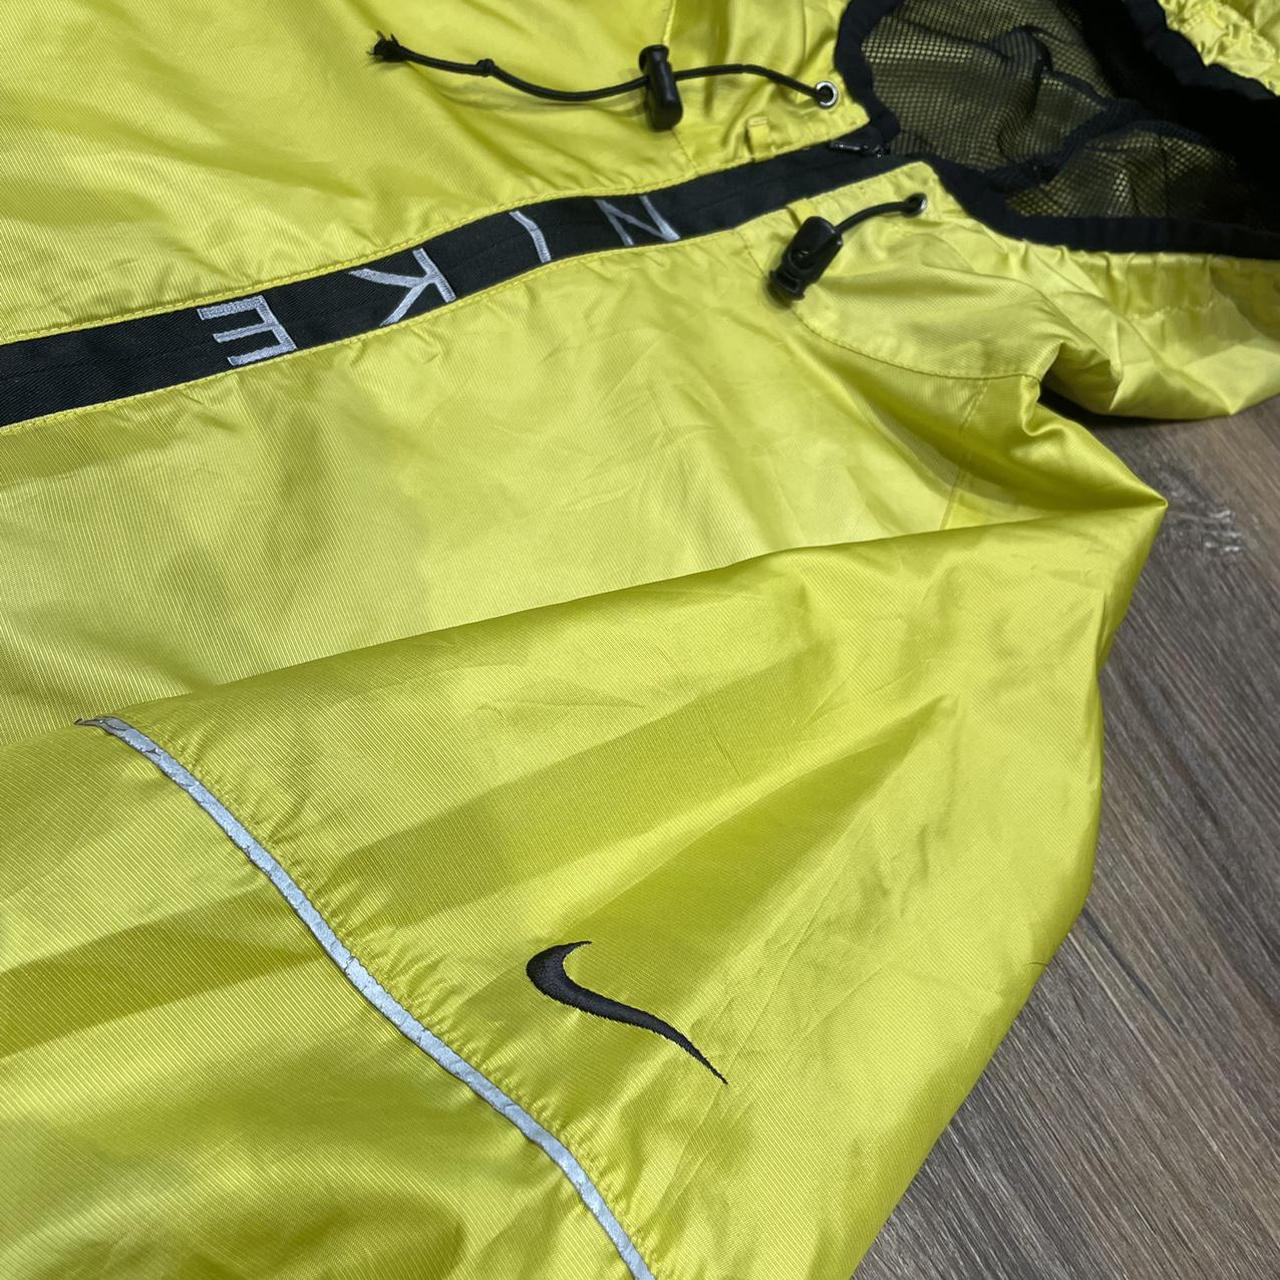 Nike Spellout Windbreaker Jacket - Yellow Size -... - Depop